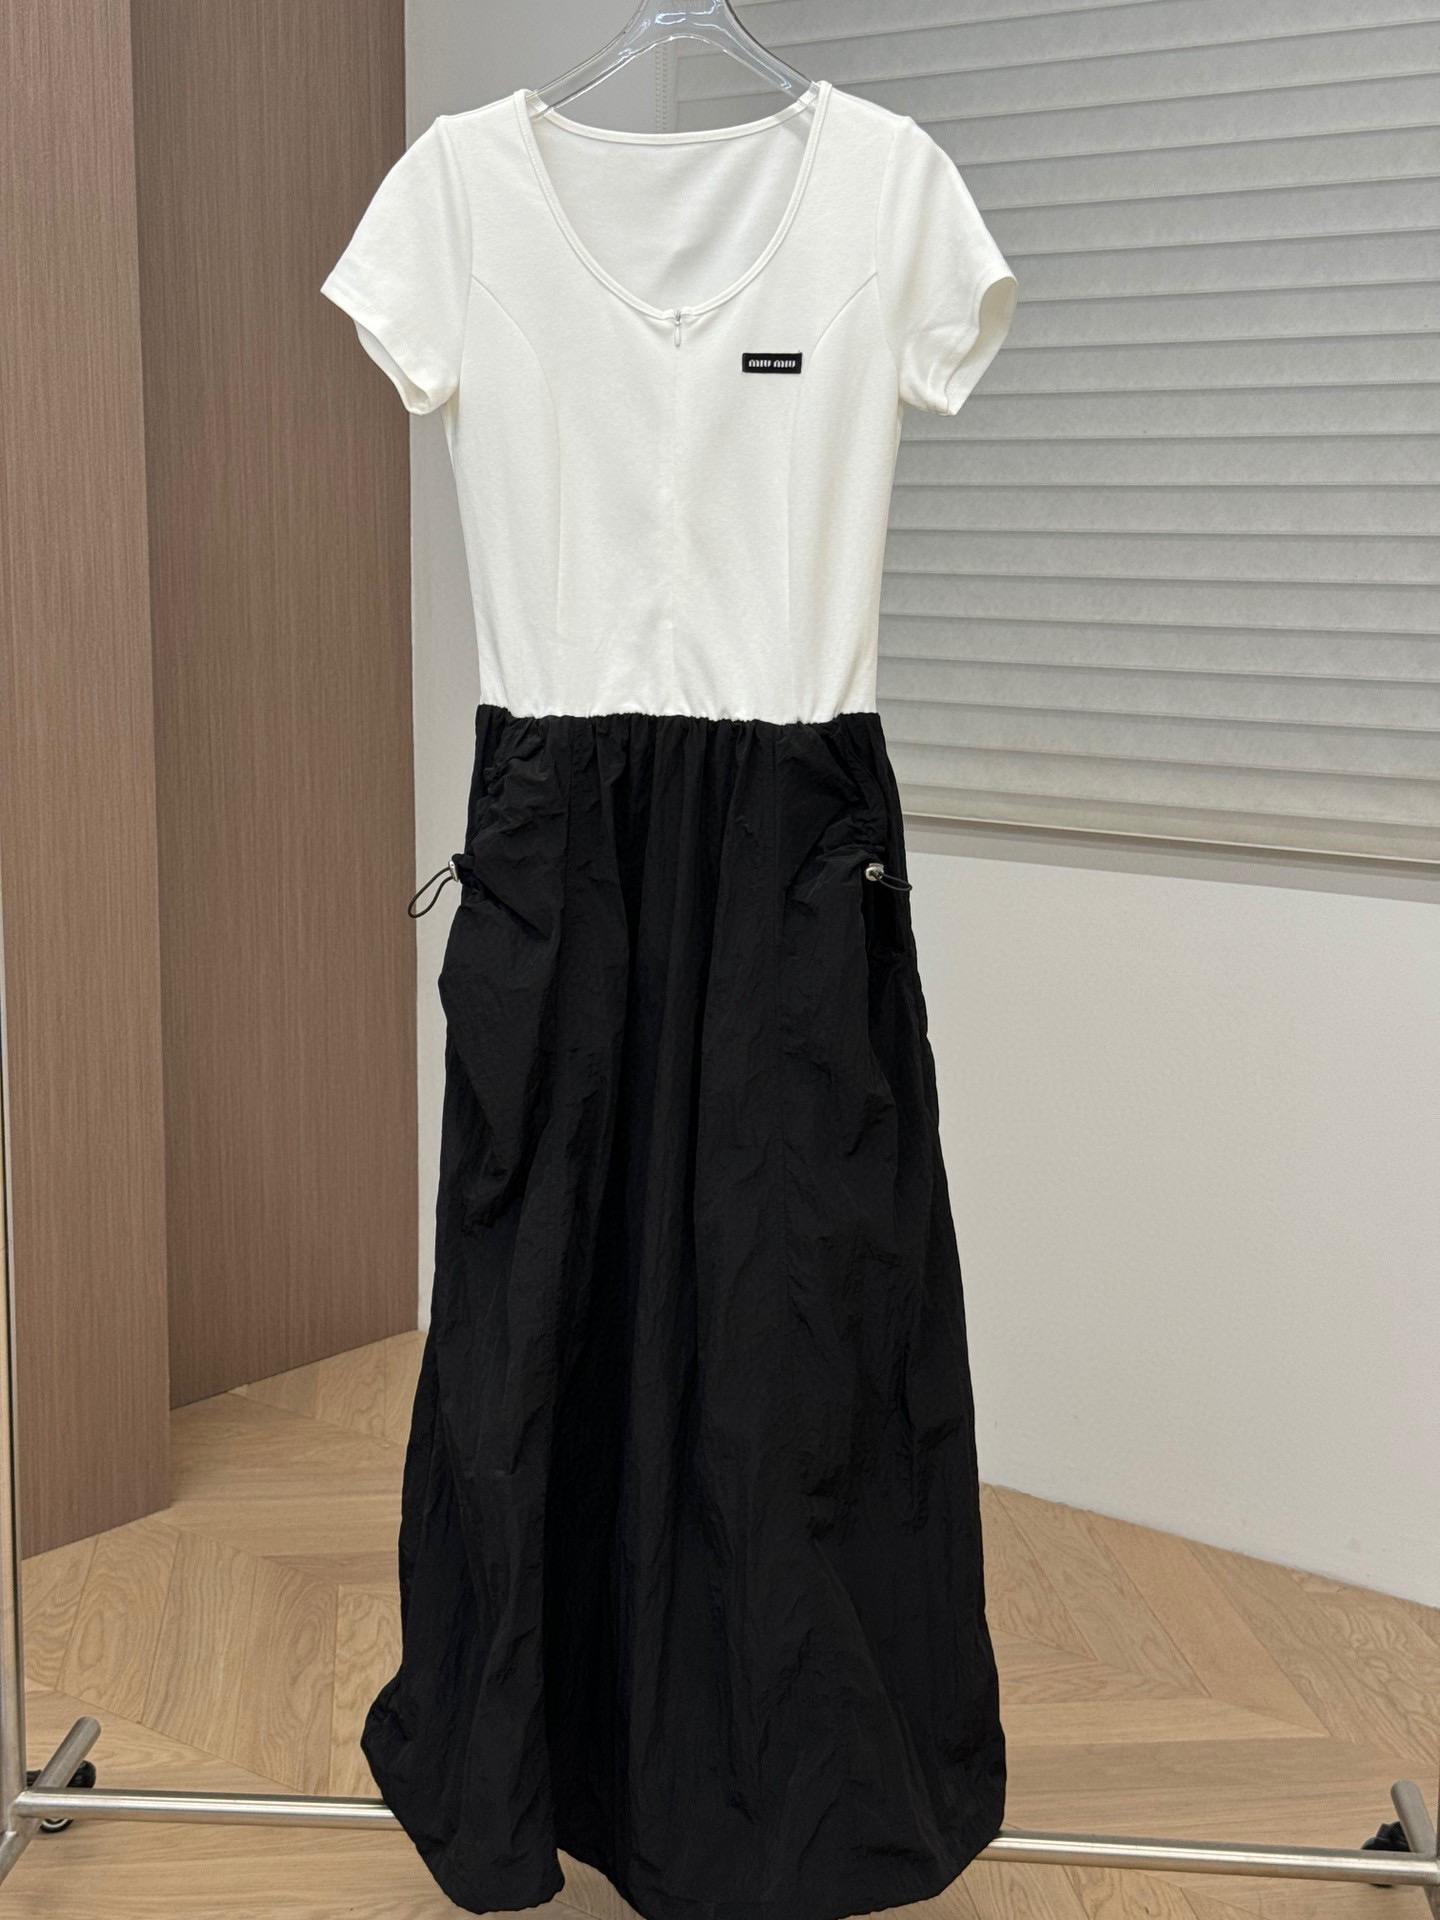 【新款发售】 Miumiu黑白撞色拼接设计连衣裙 高品质pzydlb SML